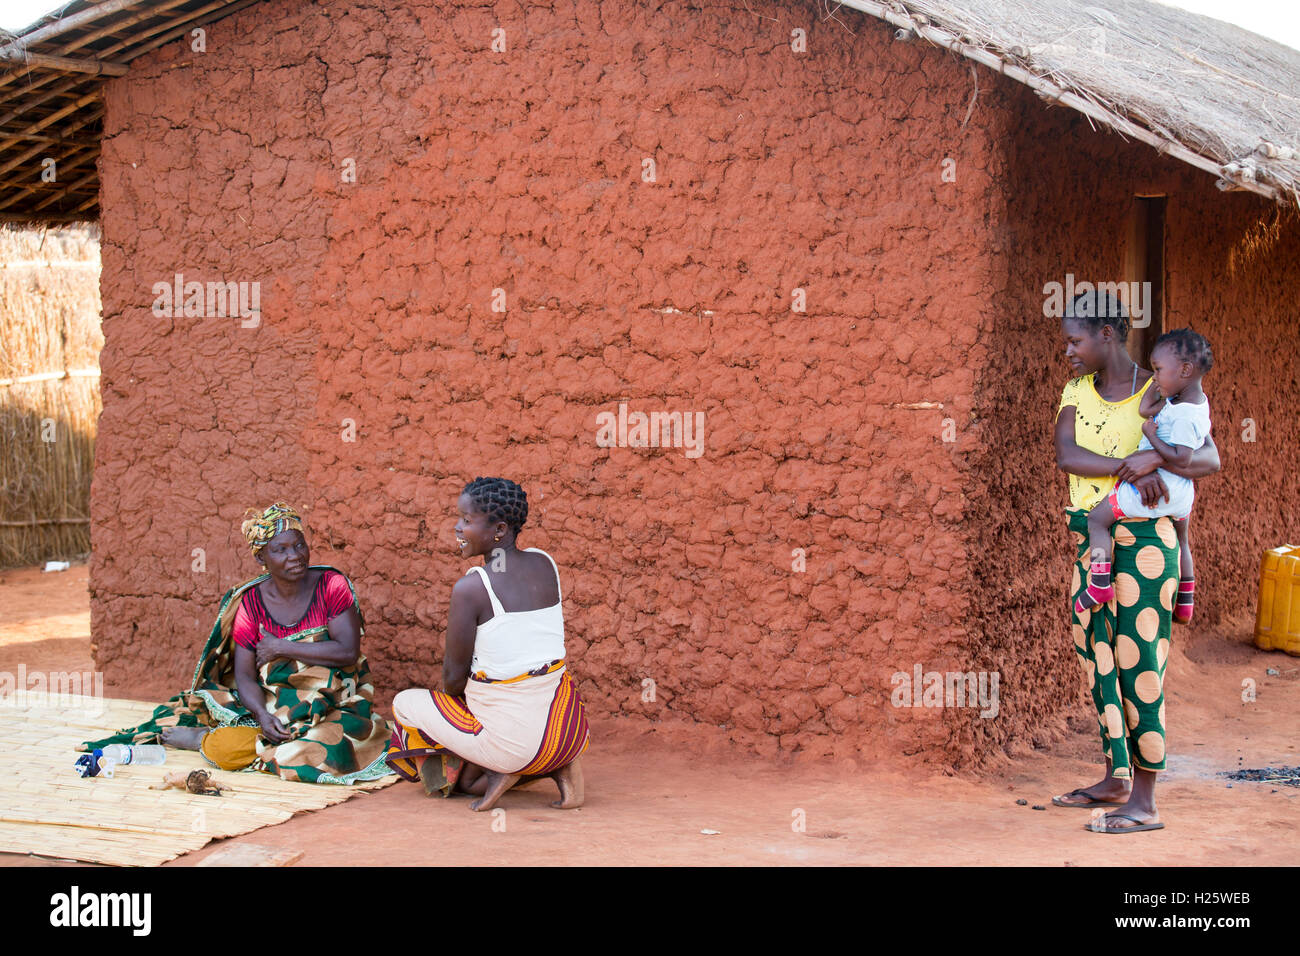 Namina Dorf, Provinz Nampula, Mosambik, August 2015: Maria Albino, begrüßt Freunde und Familie, nachdem sie mit ihrem Augenlicht wieder nach einer Kataraktoperation in ihr Dorf zurück.  Foto: Mike Goldwater Stockfoto